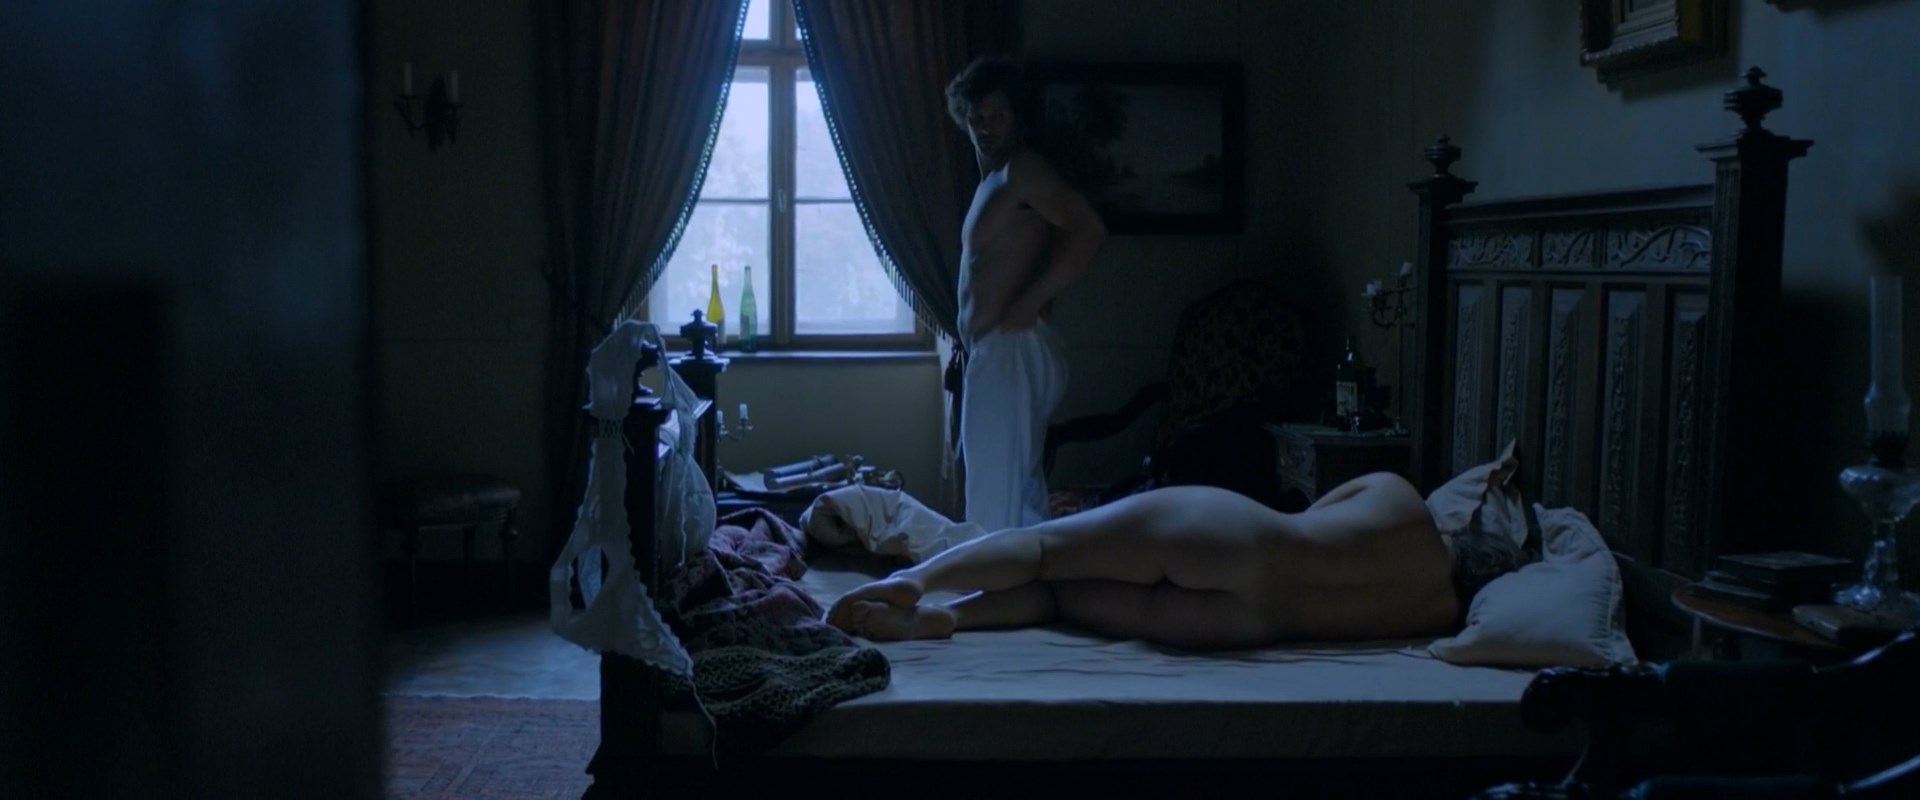 Has julia garner ever been nude - Julia Garner nude, topless pict...